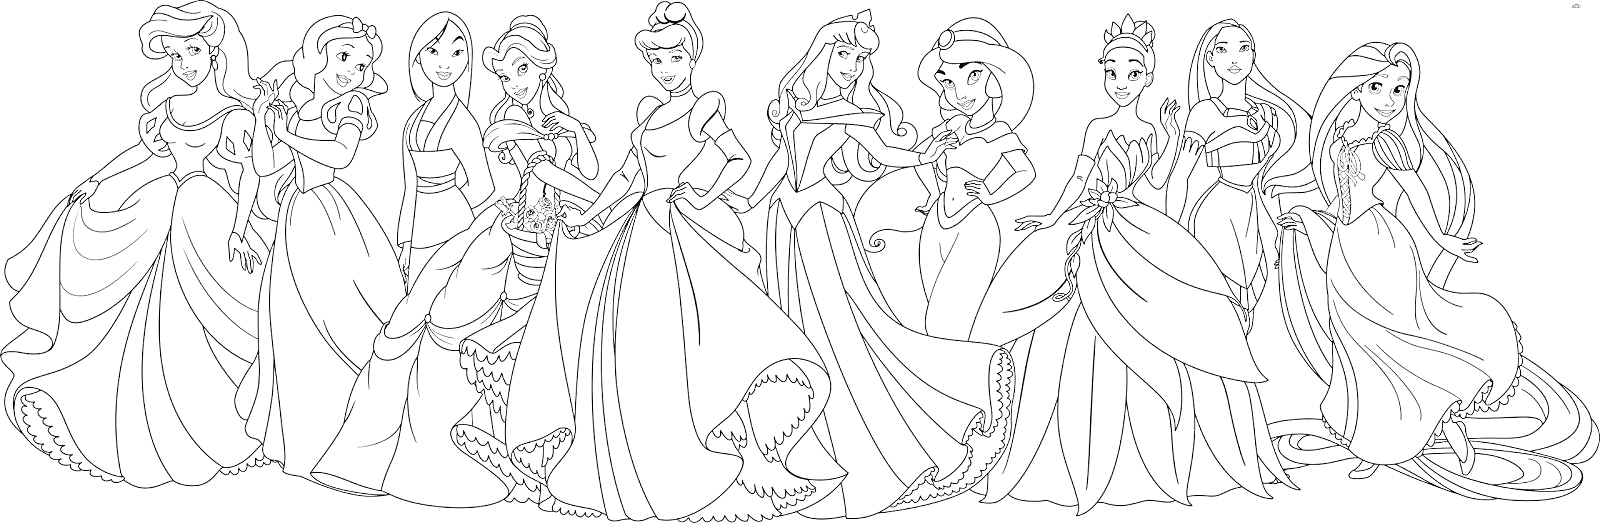 Раскраска Принцессы Диснея, изображённые в полный рост в их известных нарядах